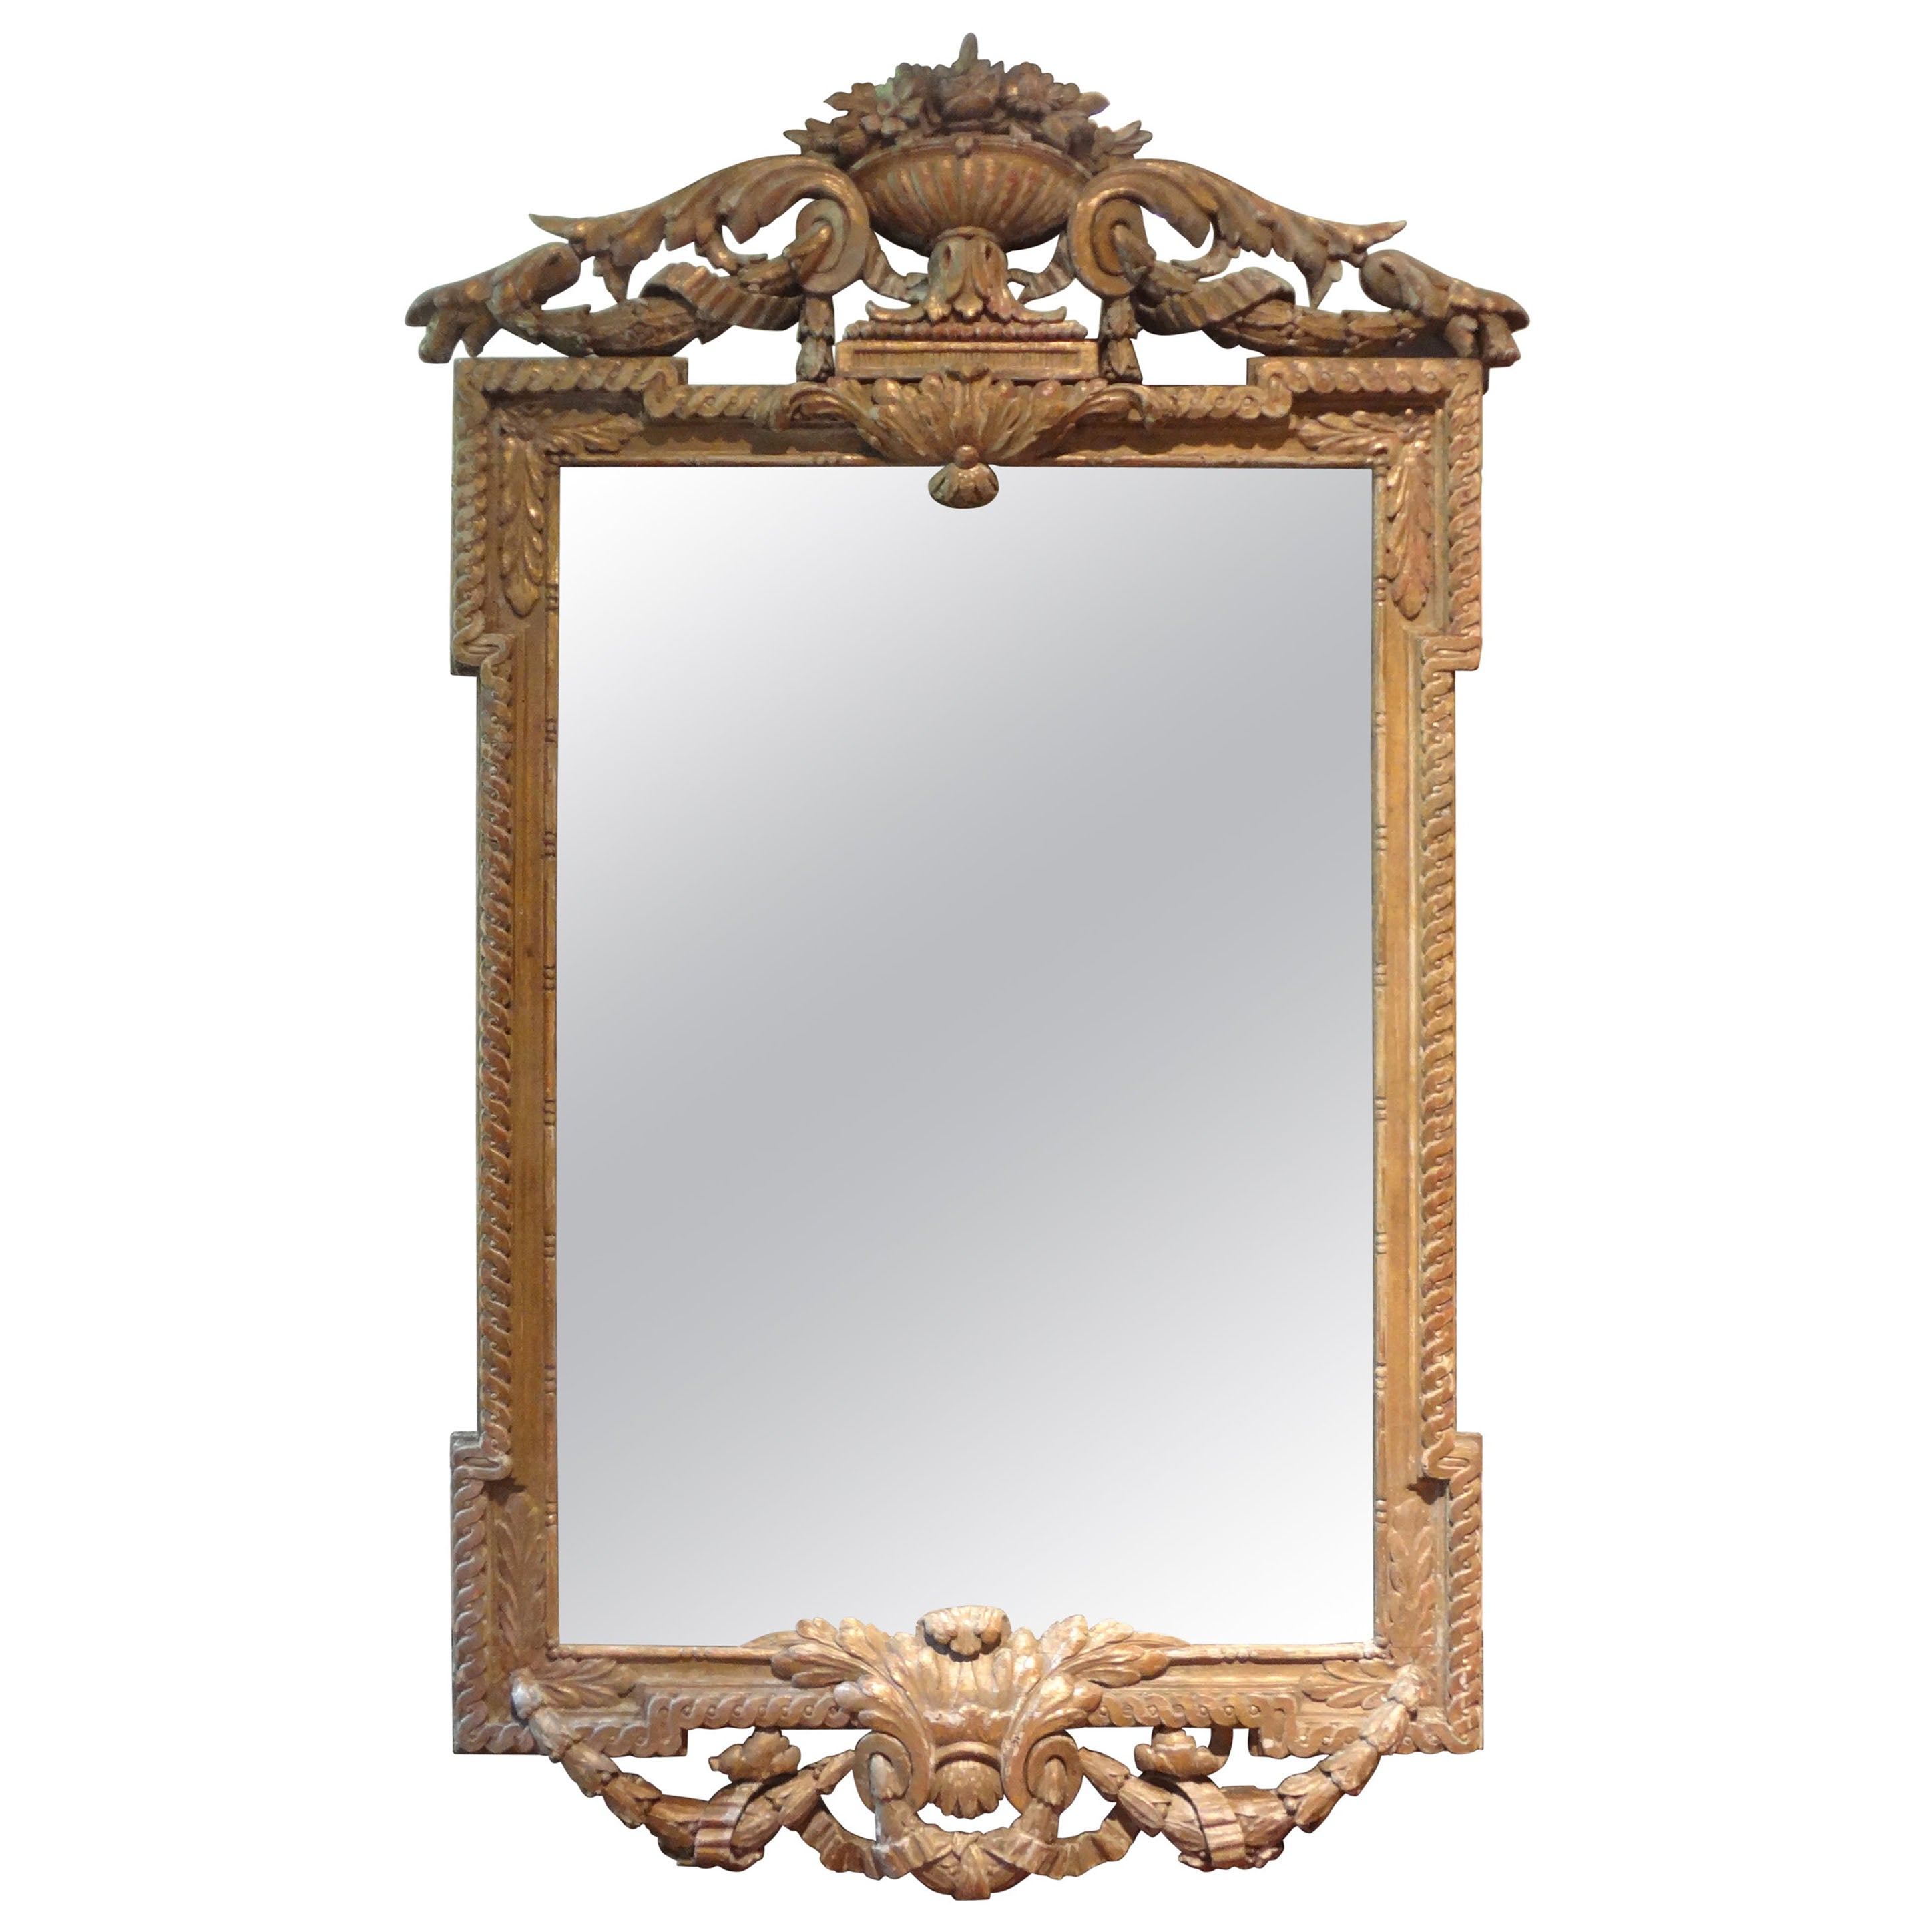 Miroir en bois doré de la Régence française du XVIIIe siècle 